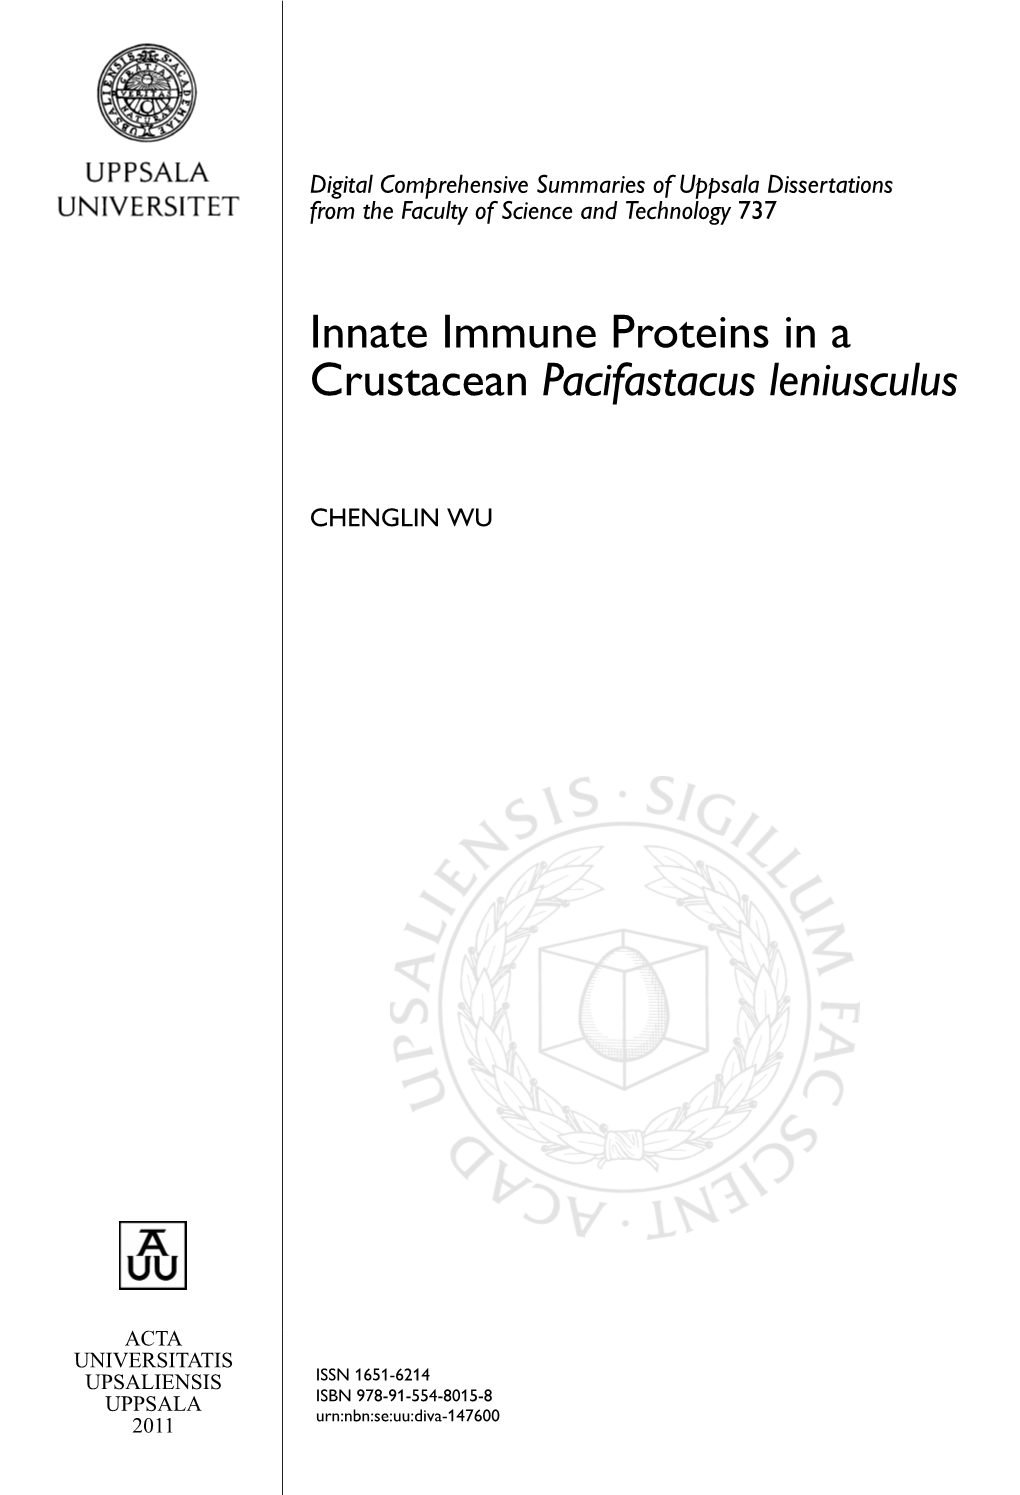 Innate Immune Proteins in a Crustacean Pacifastacus Leniusculus